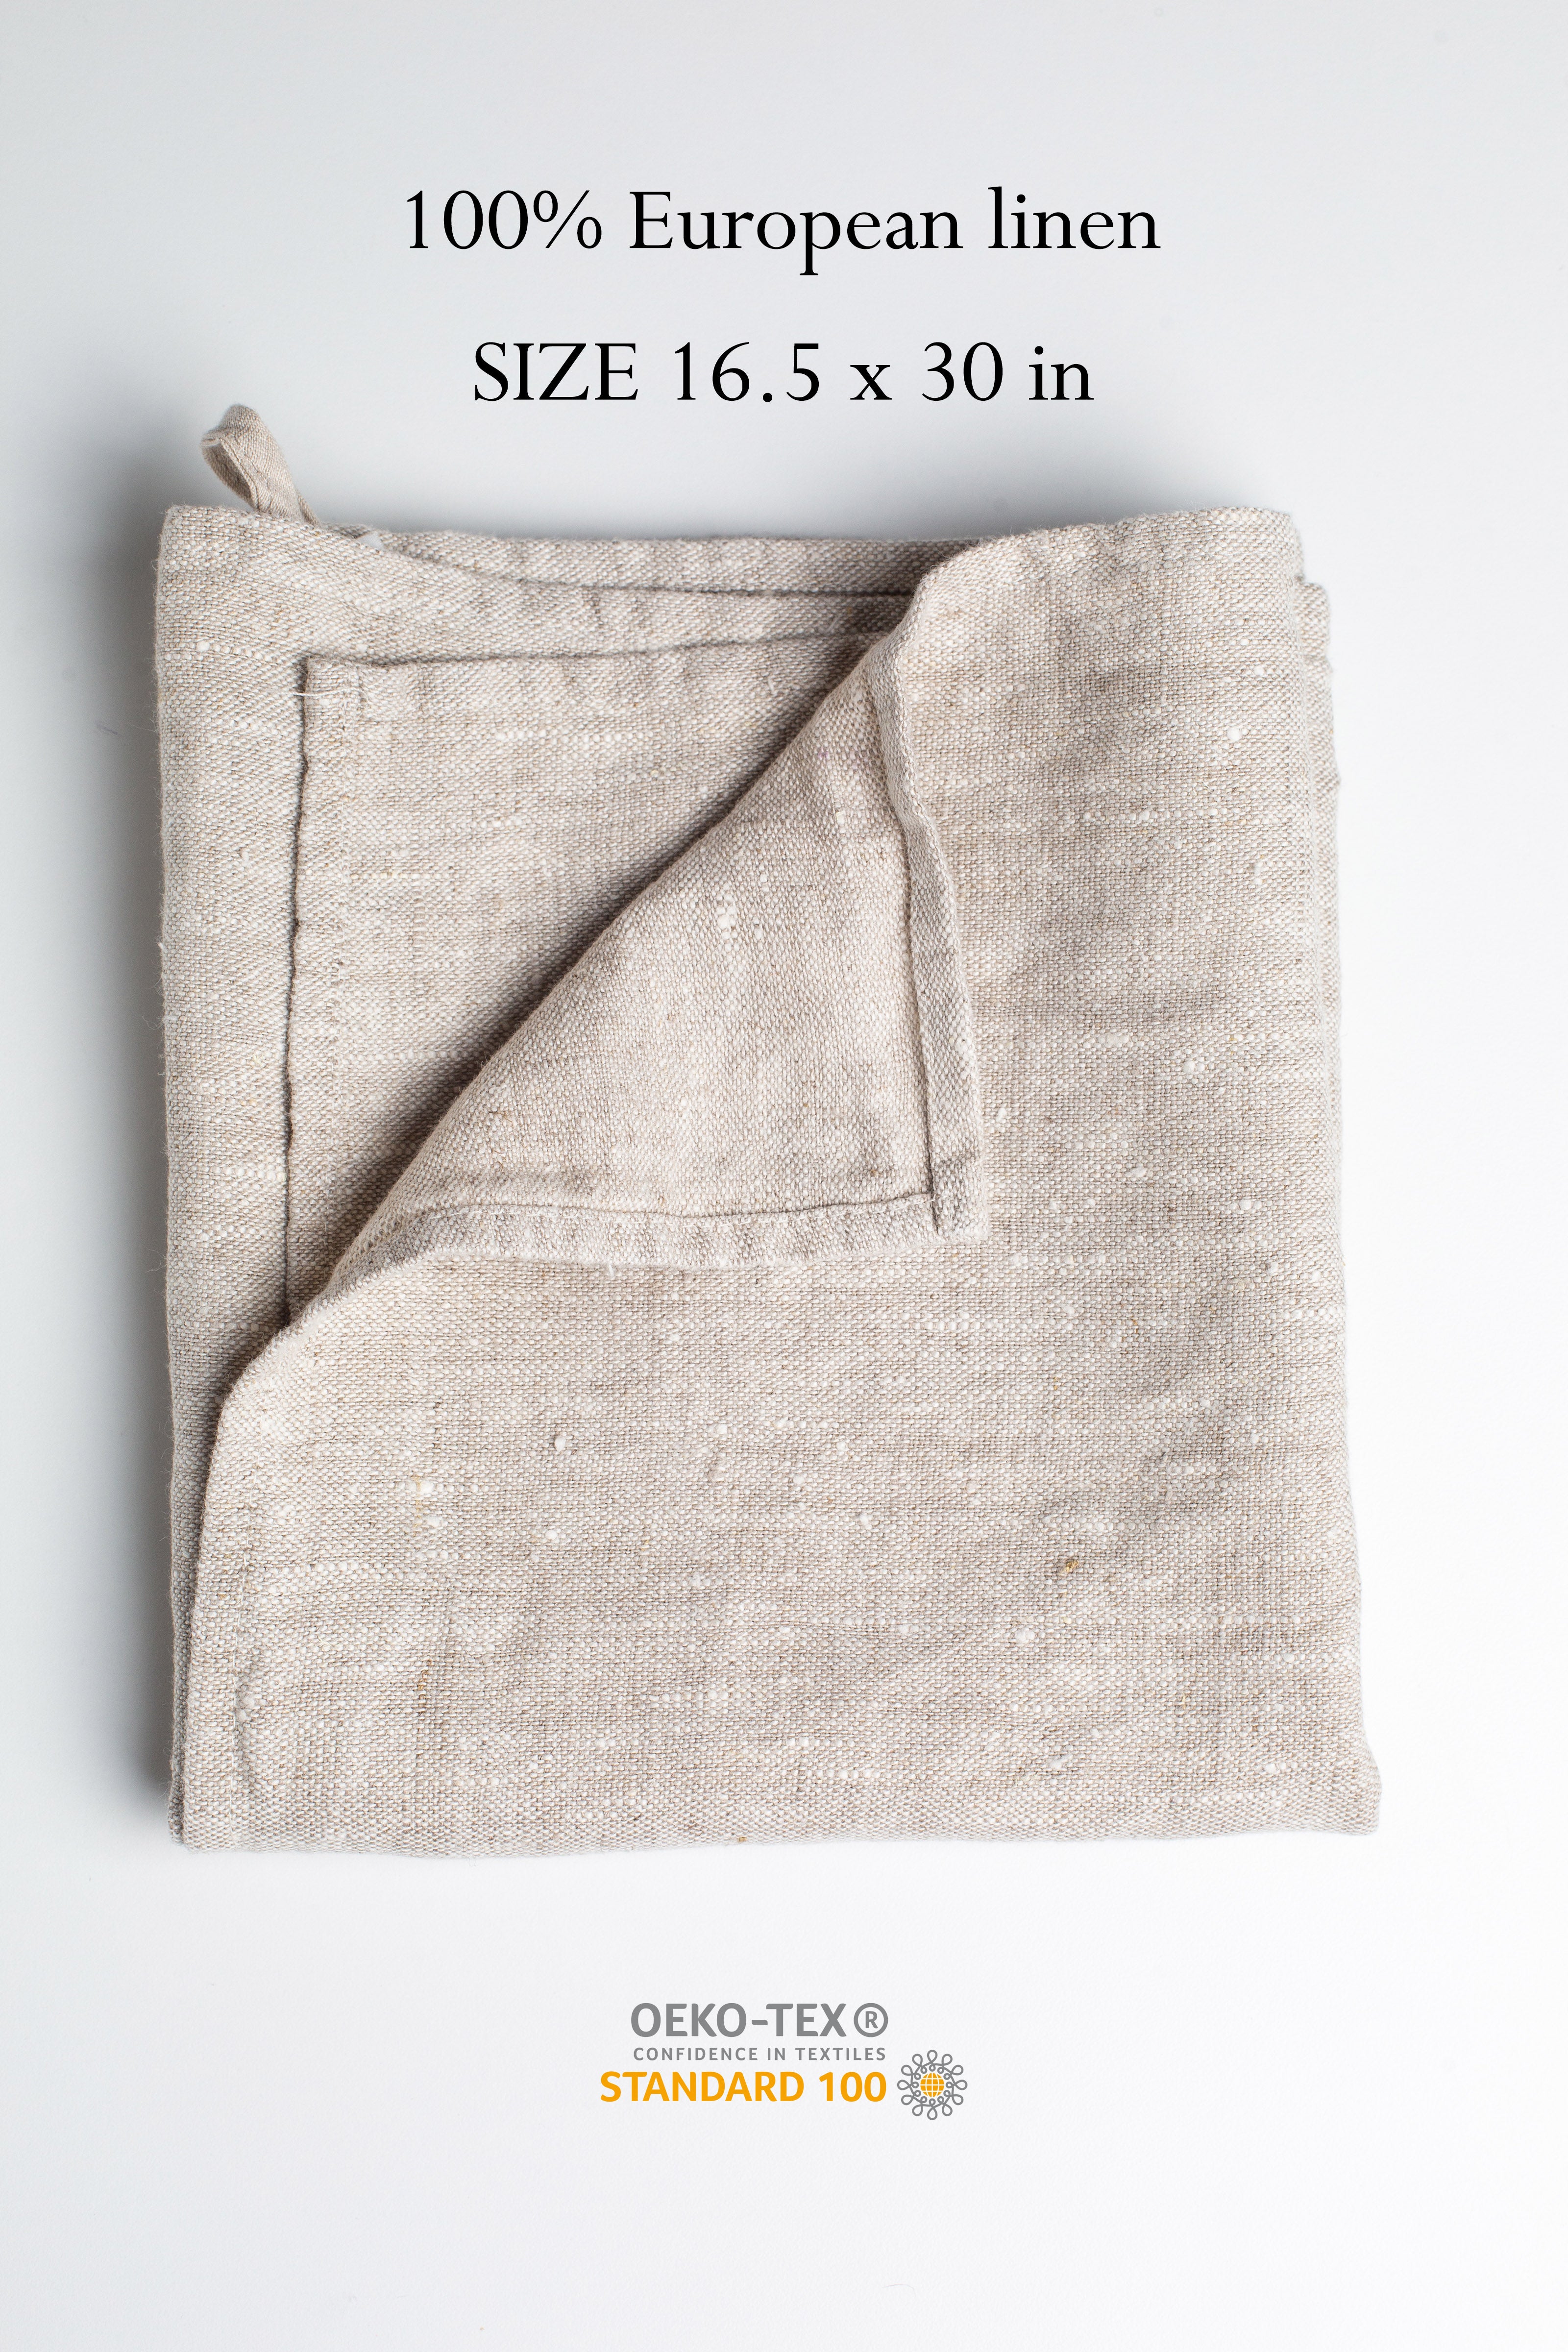 Soft Linen Towels / 100% Linen Towels Kitchen / Best Linen Dish Towels